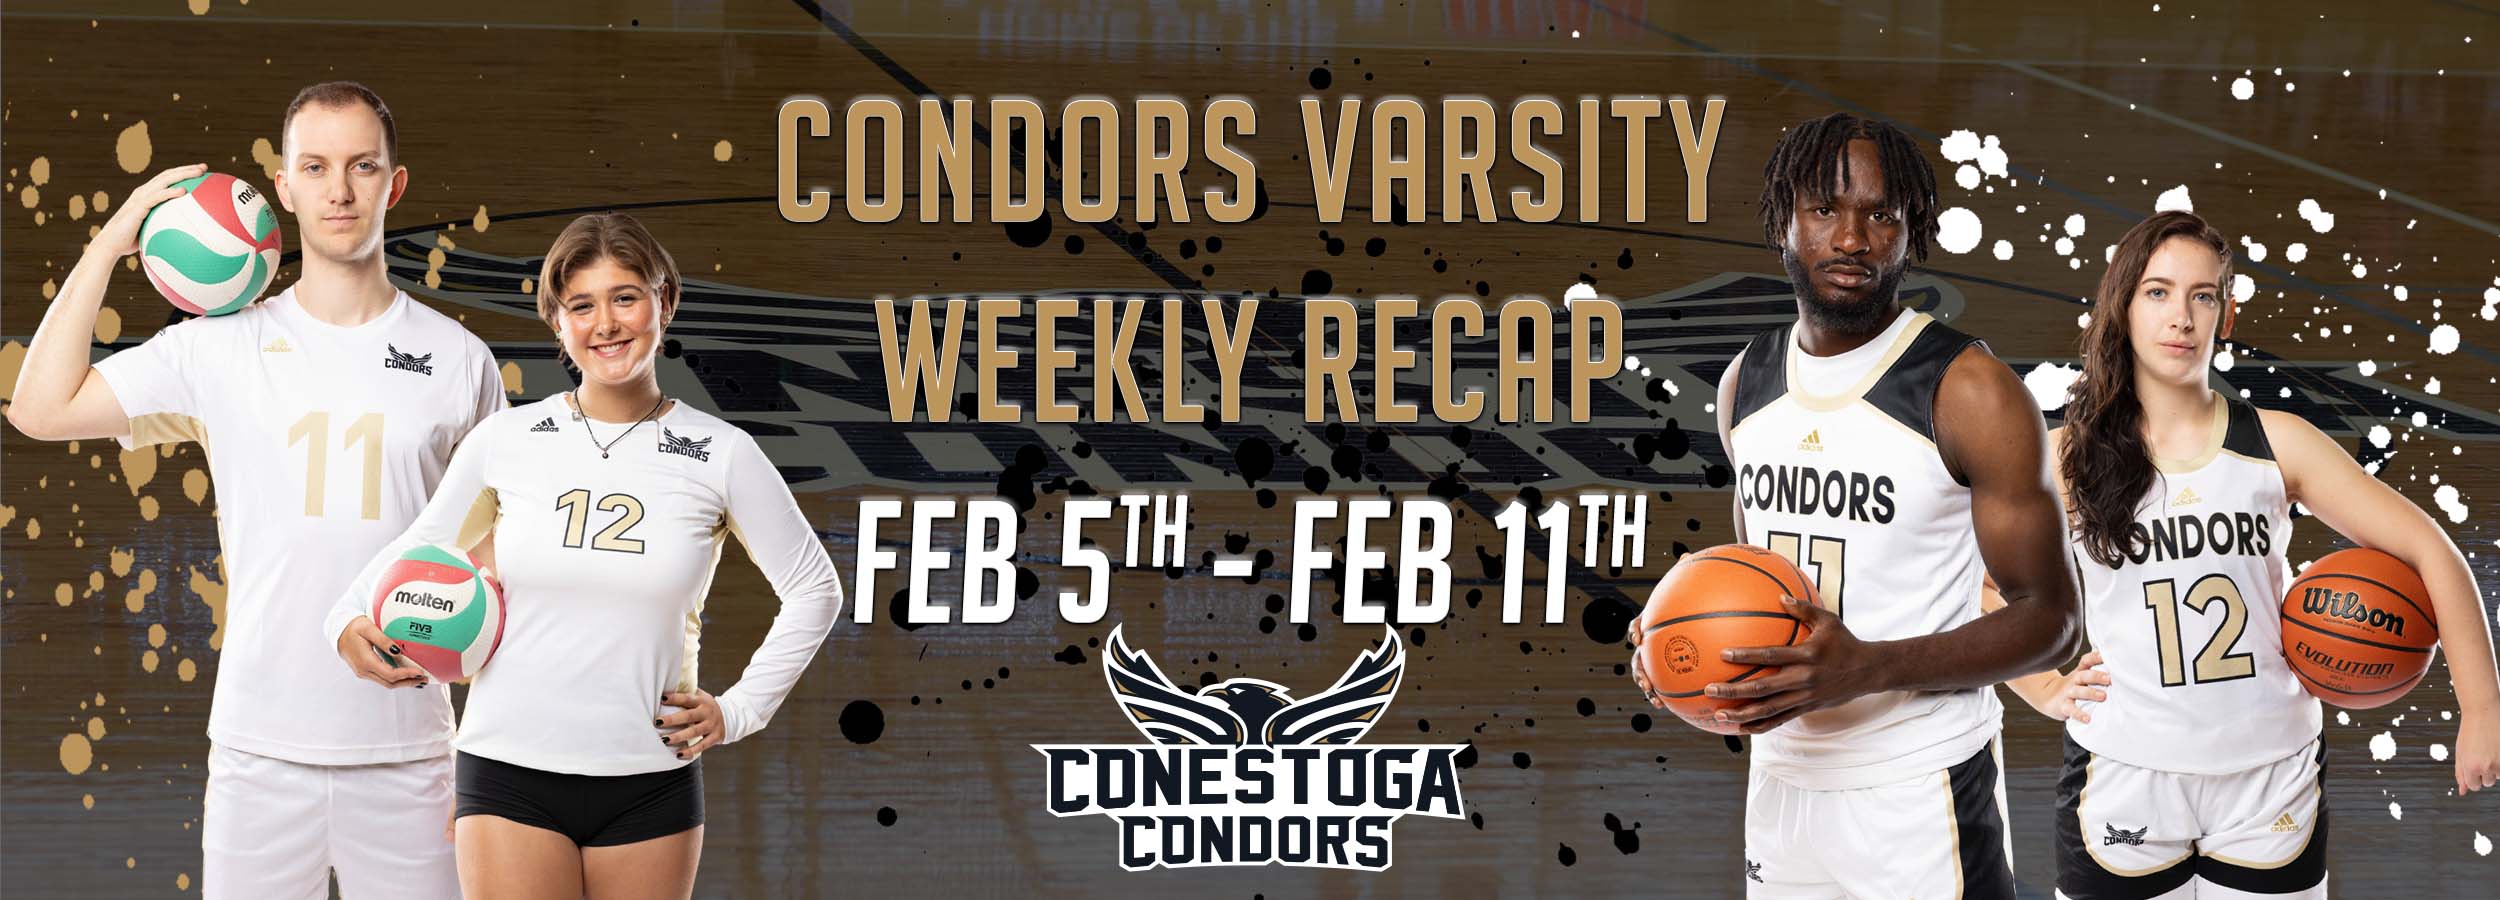 Condors Varsity Weekly Recap Feb 5th - Feb 11th